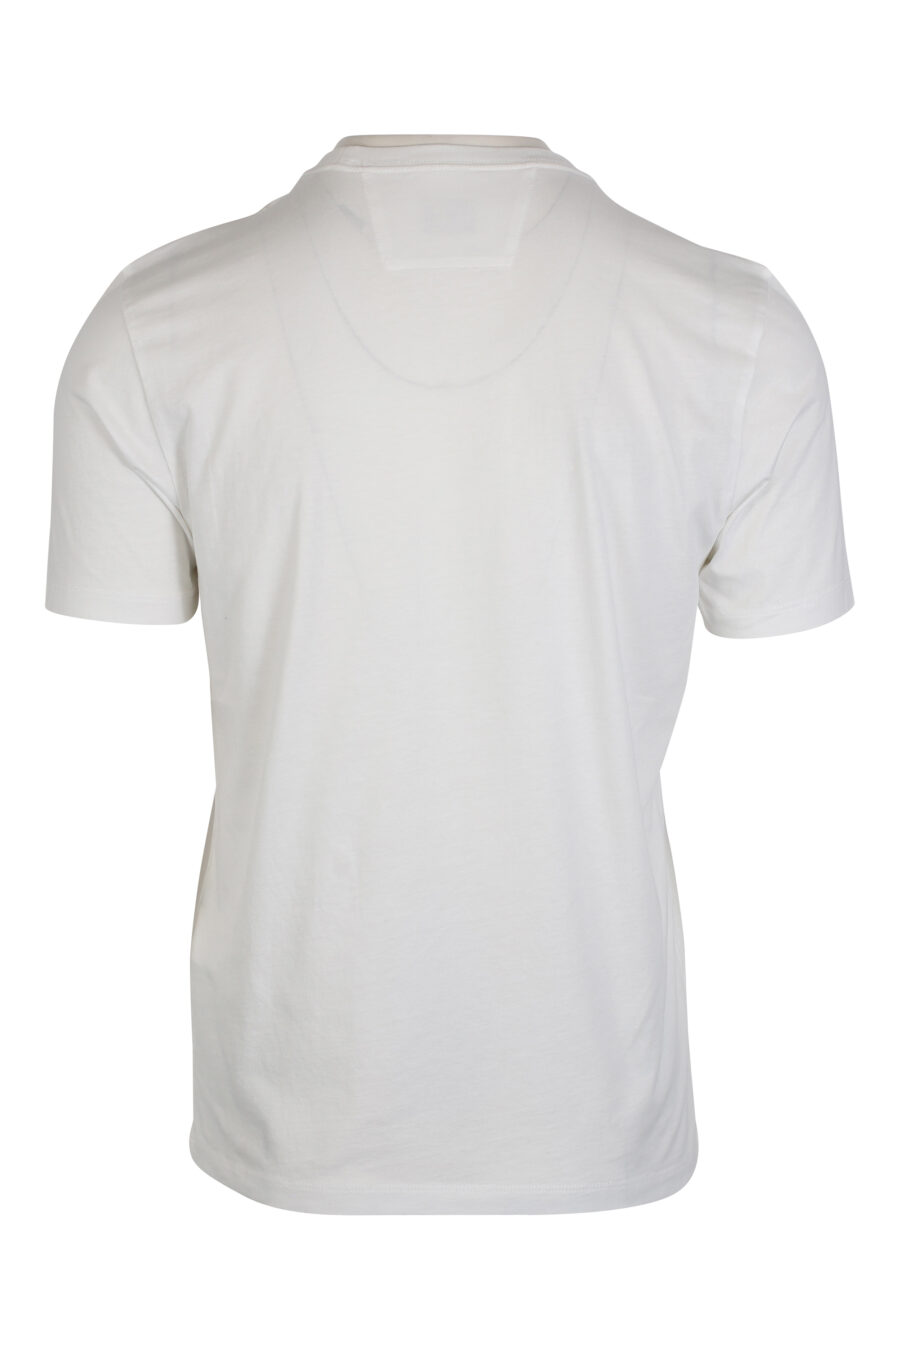 Camiseta blanca con maxilogo monocromático - IMG 2429